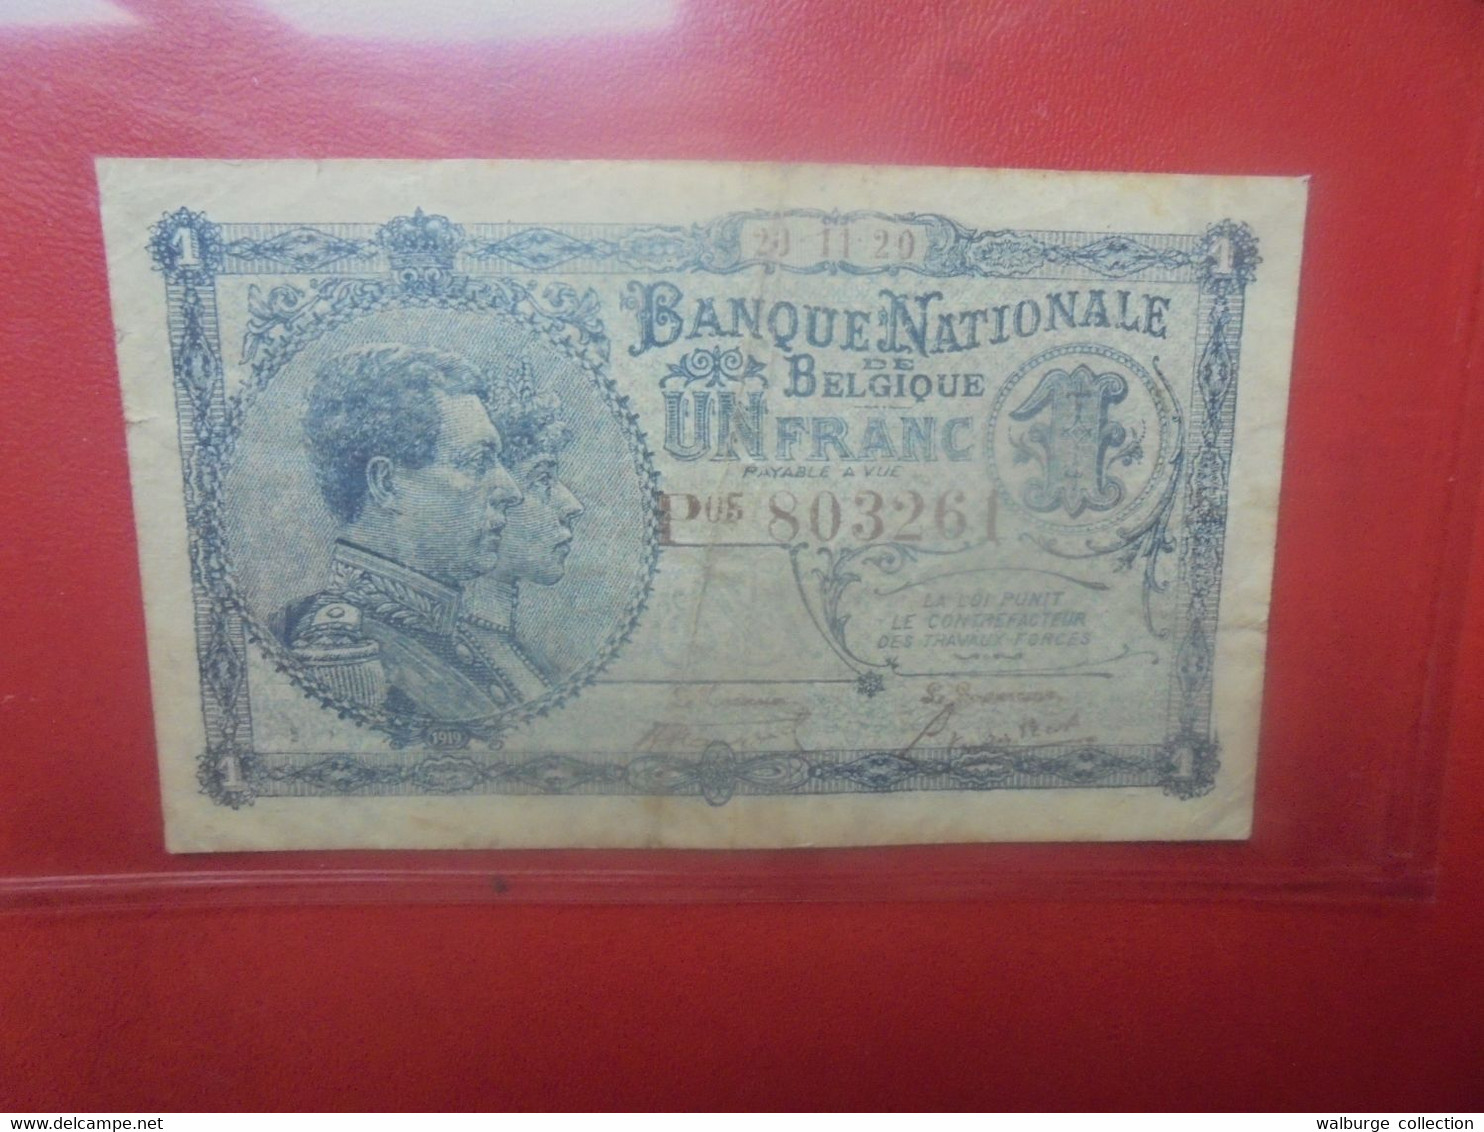 BELGIQUE 1 Franc 1920 Circuler (B.28) - 1 Franc